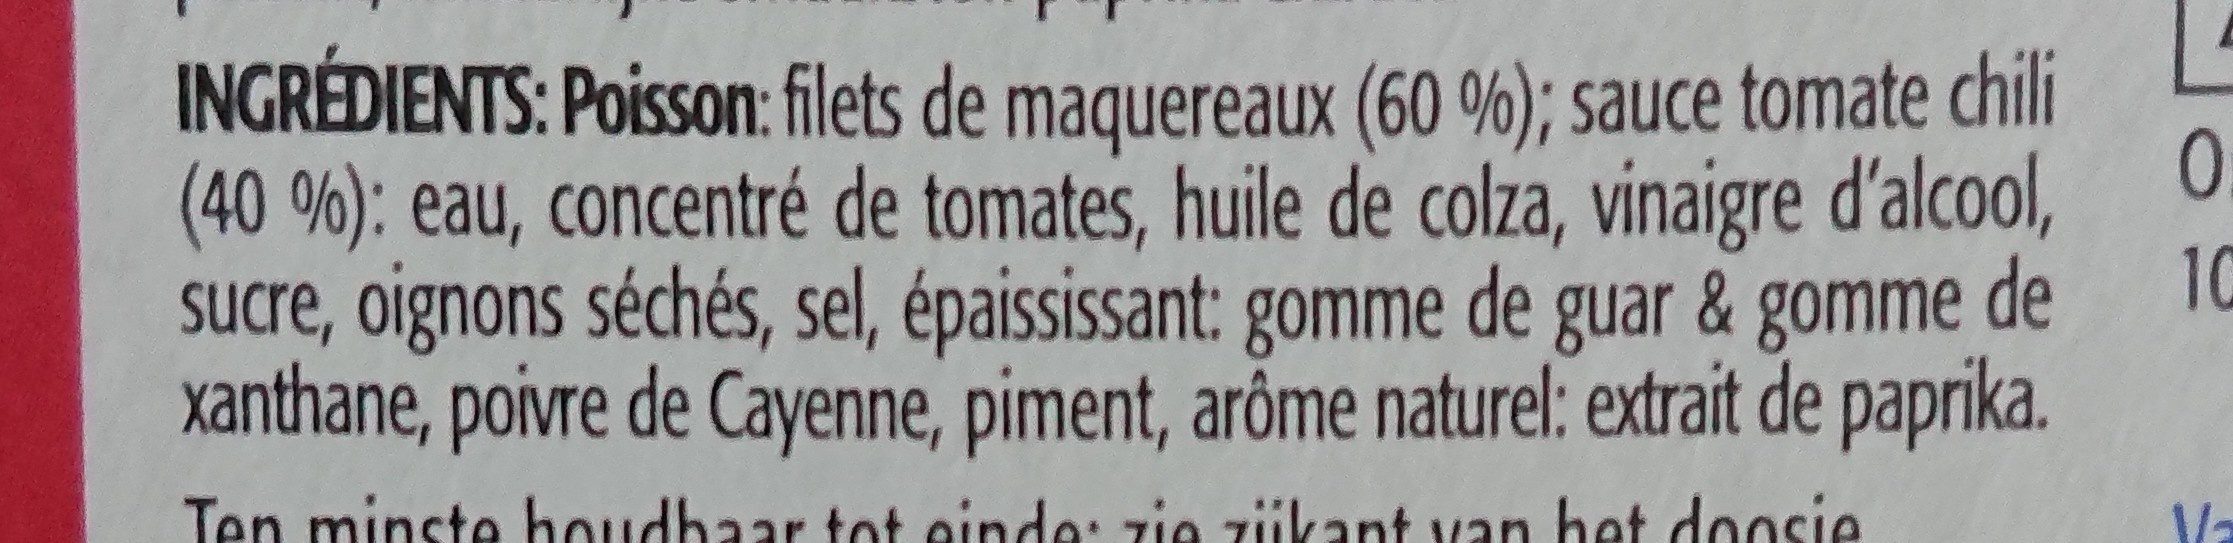 Maqureau - Ingredients - fr